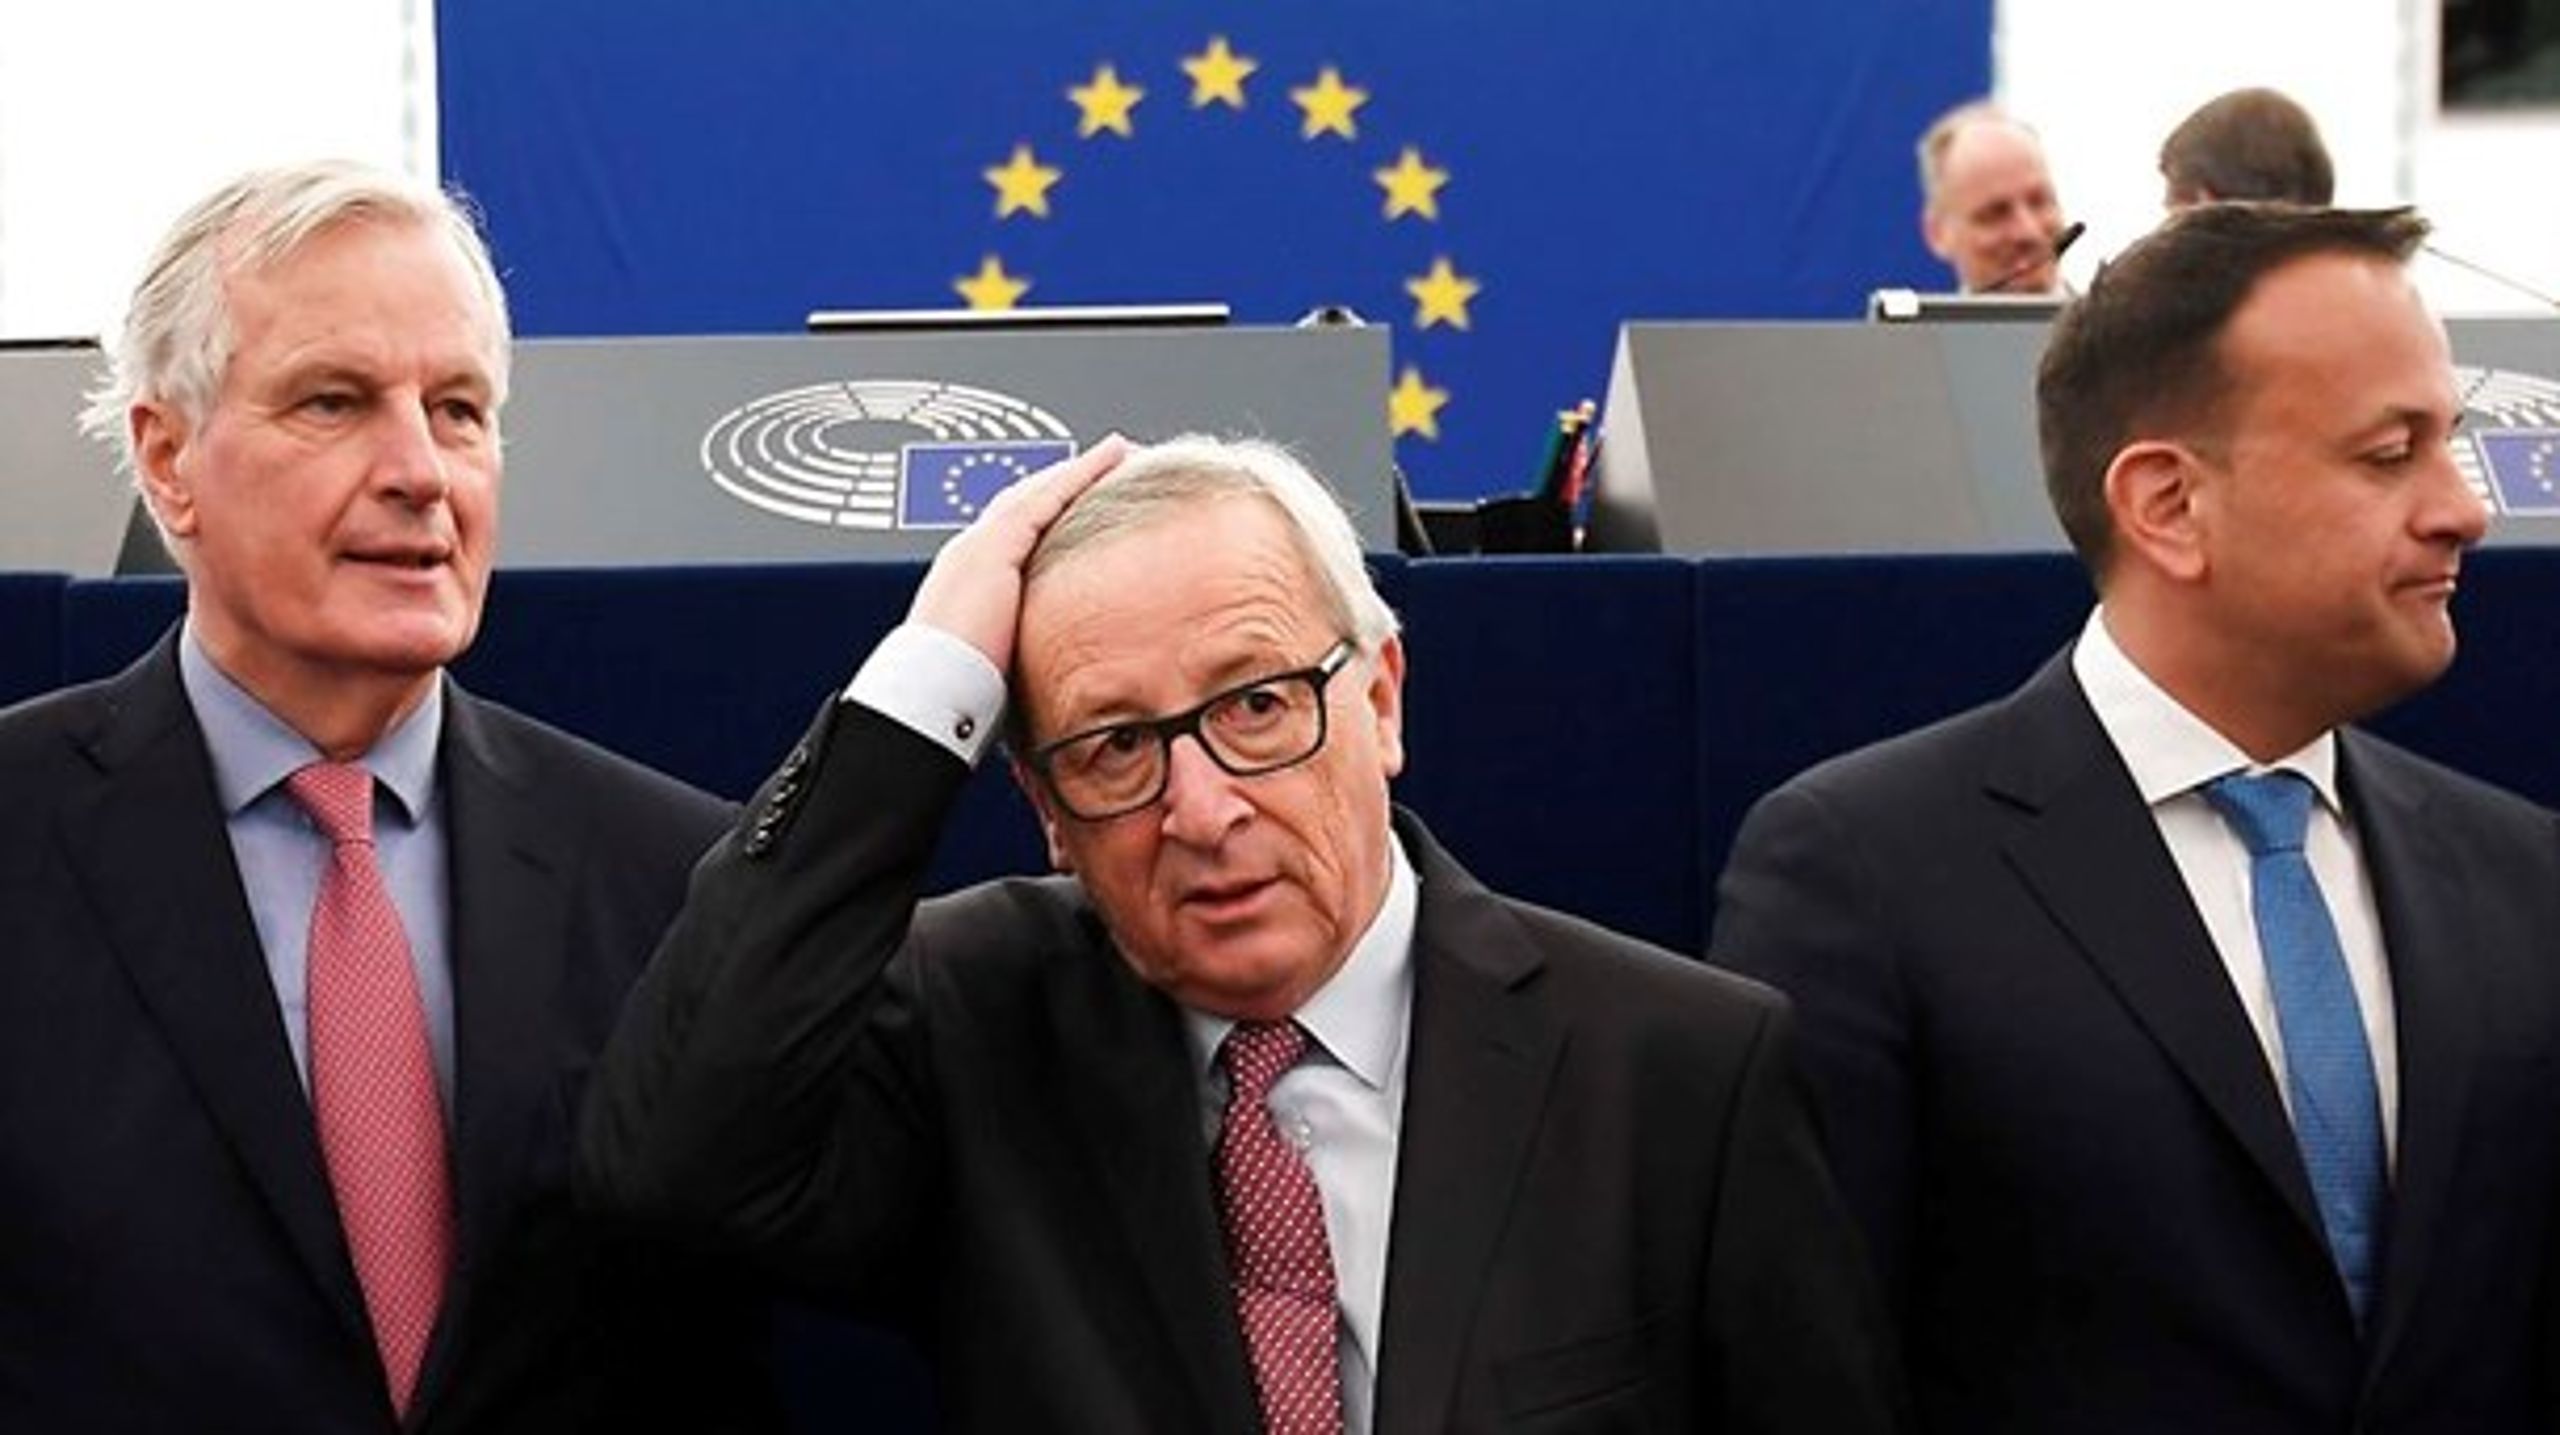 Tre mænd i søgelyset i EU's spitzenkandidat-proces. Irlands premierminister, Leo Varadkar (t.h.), meldte onsdag ud i en tale i Europa-Parlamentet,&nbsp;at han støtter processen. Jean-Claude Juncker (i midten) blev i 2014 den første kommissionsformand udnævnt som følge af den. Michel Barnier (t.v.) blev slået af Juncker som de konservatives kandidat i 2014, men spås en god chance i 2019.